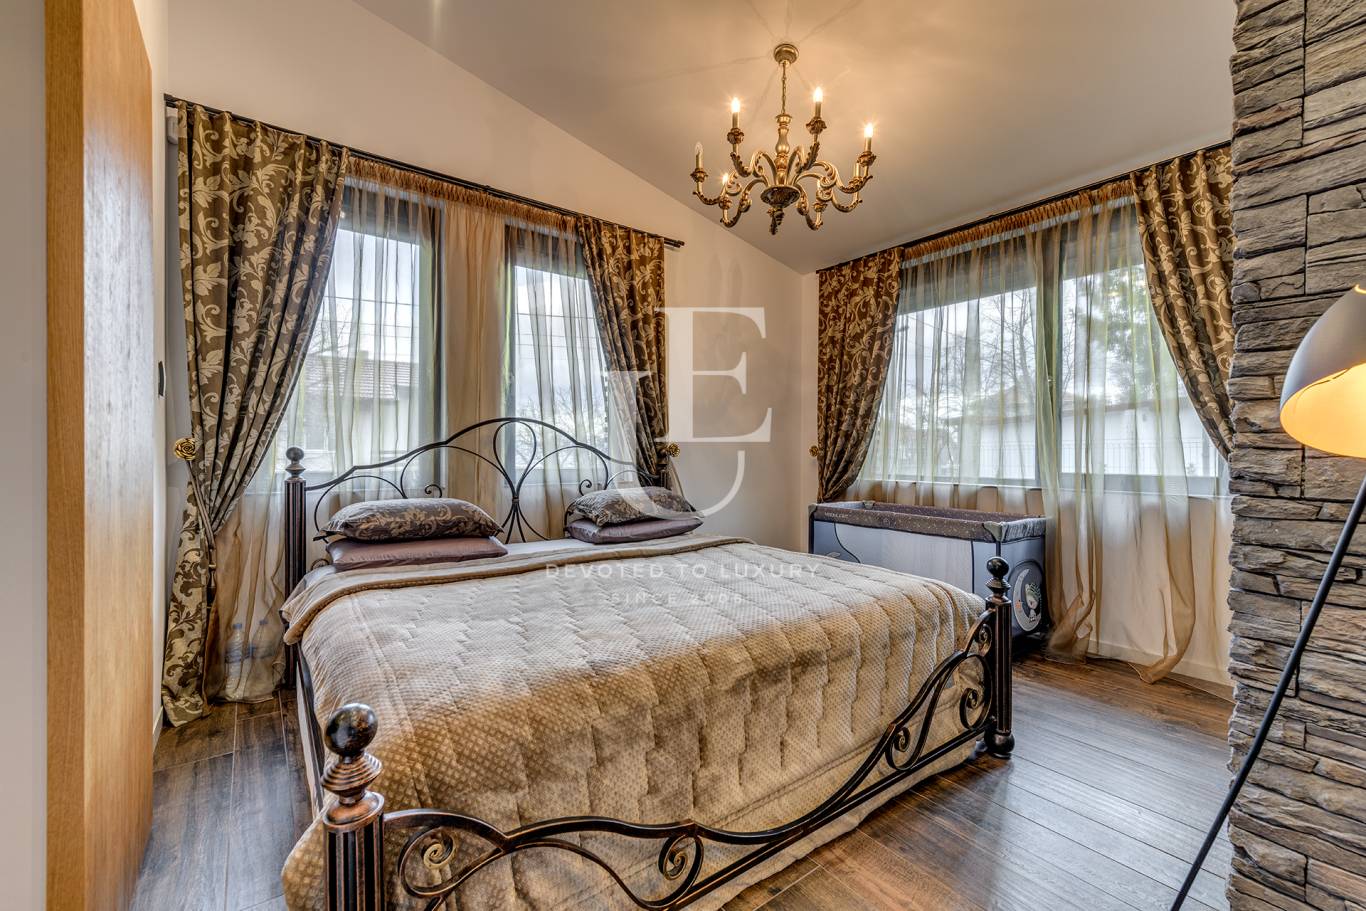 House for sale in Sofia, Vrana - Lozen va with listing ID: E19259 - image 4